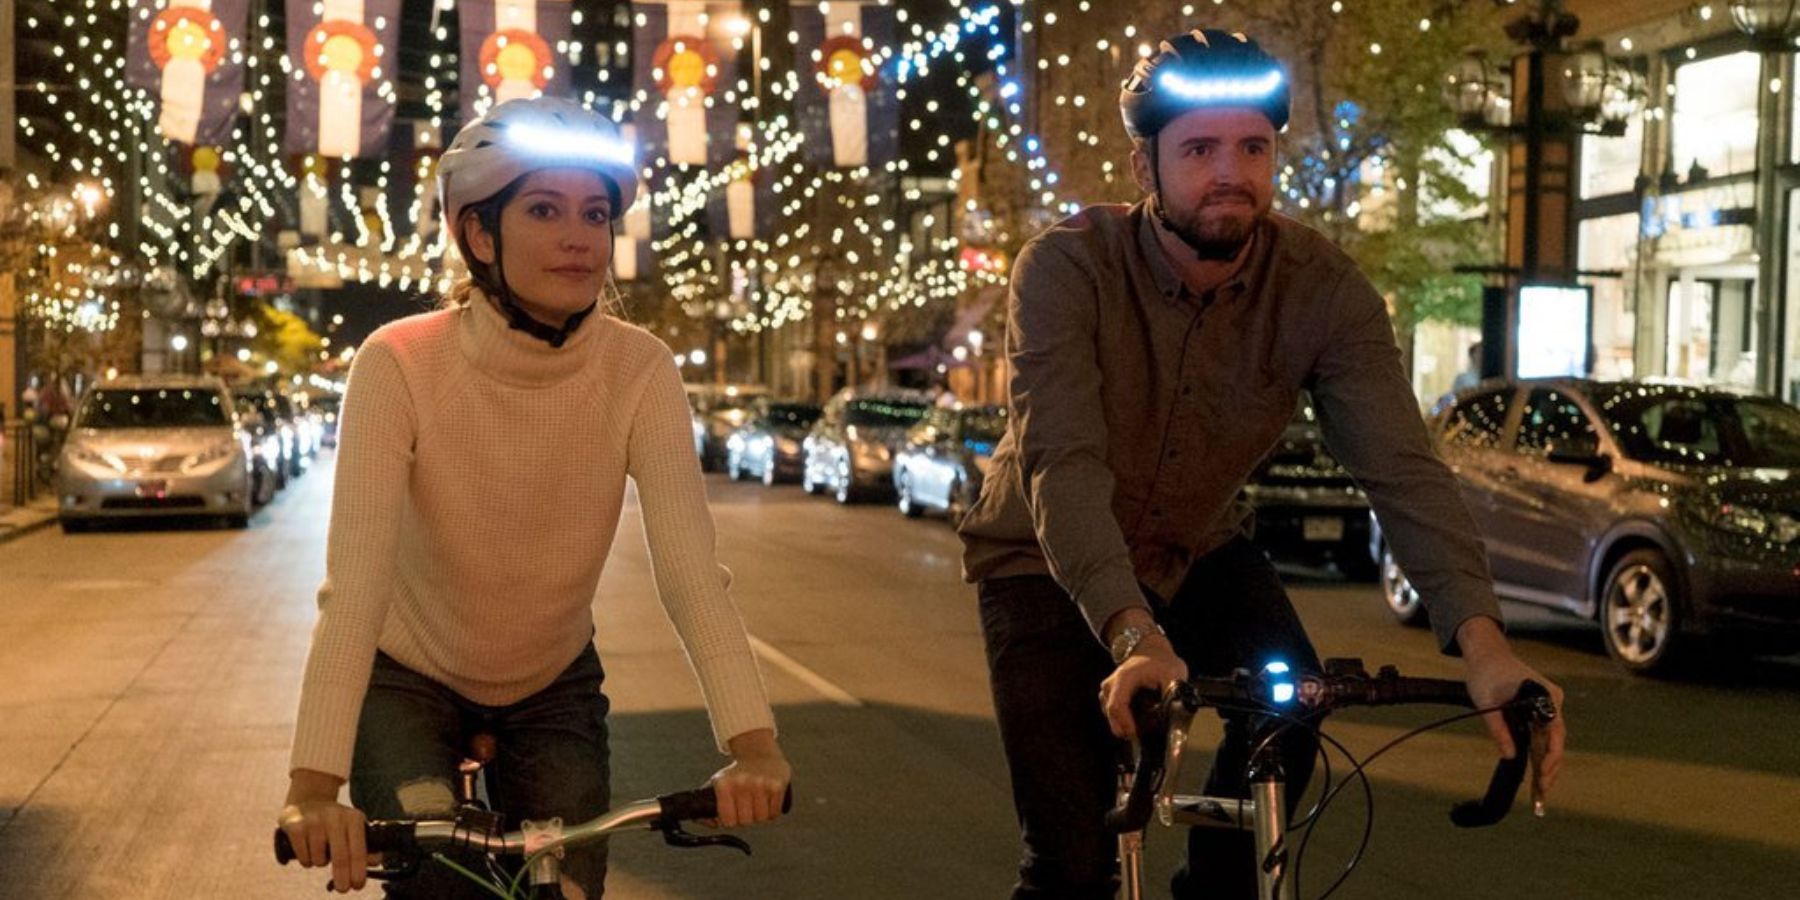 casque lumos lumineux homme femme vélo ville